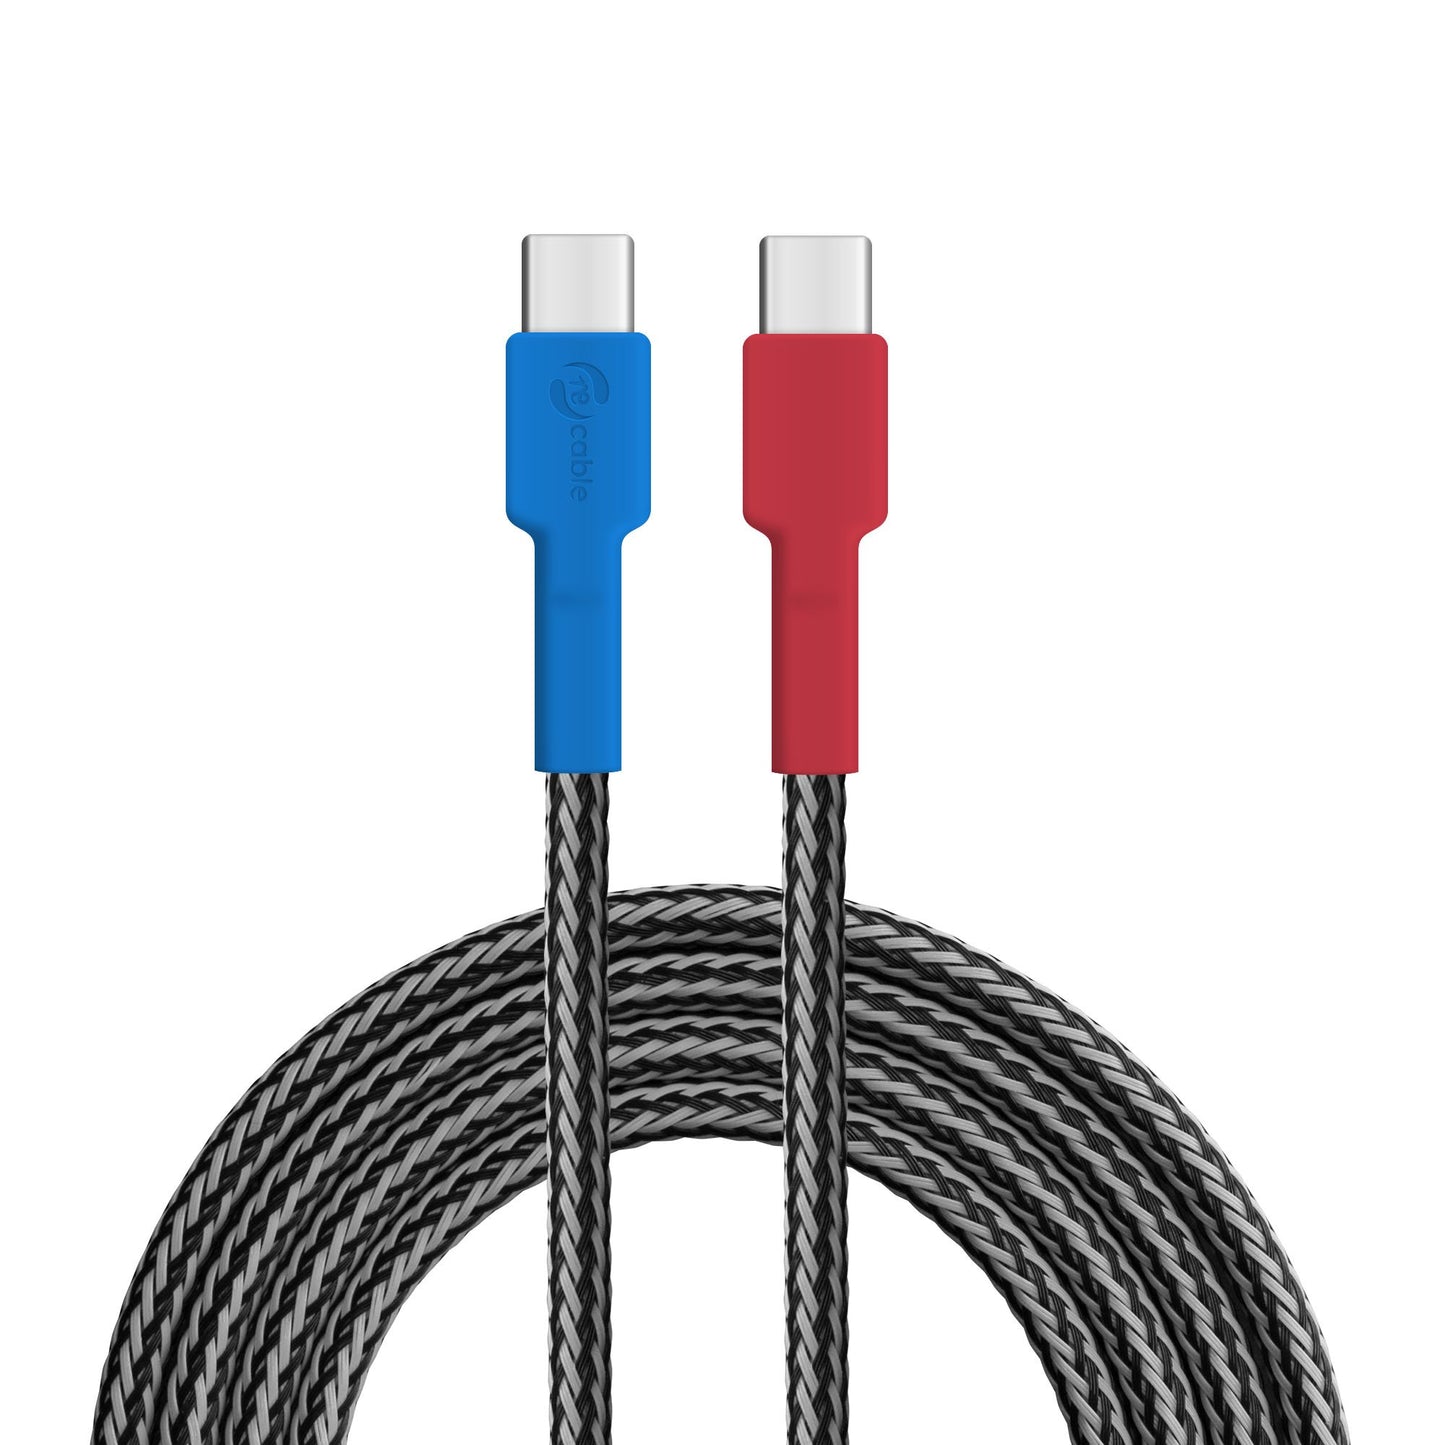 USB-Kabel, Design: Helmkasuar, Anschlüsse: USB C auf USB C